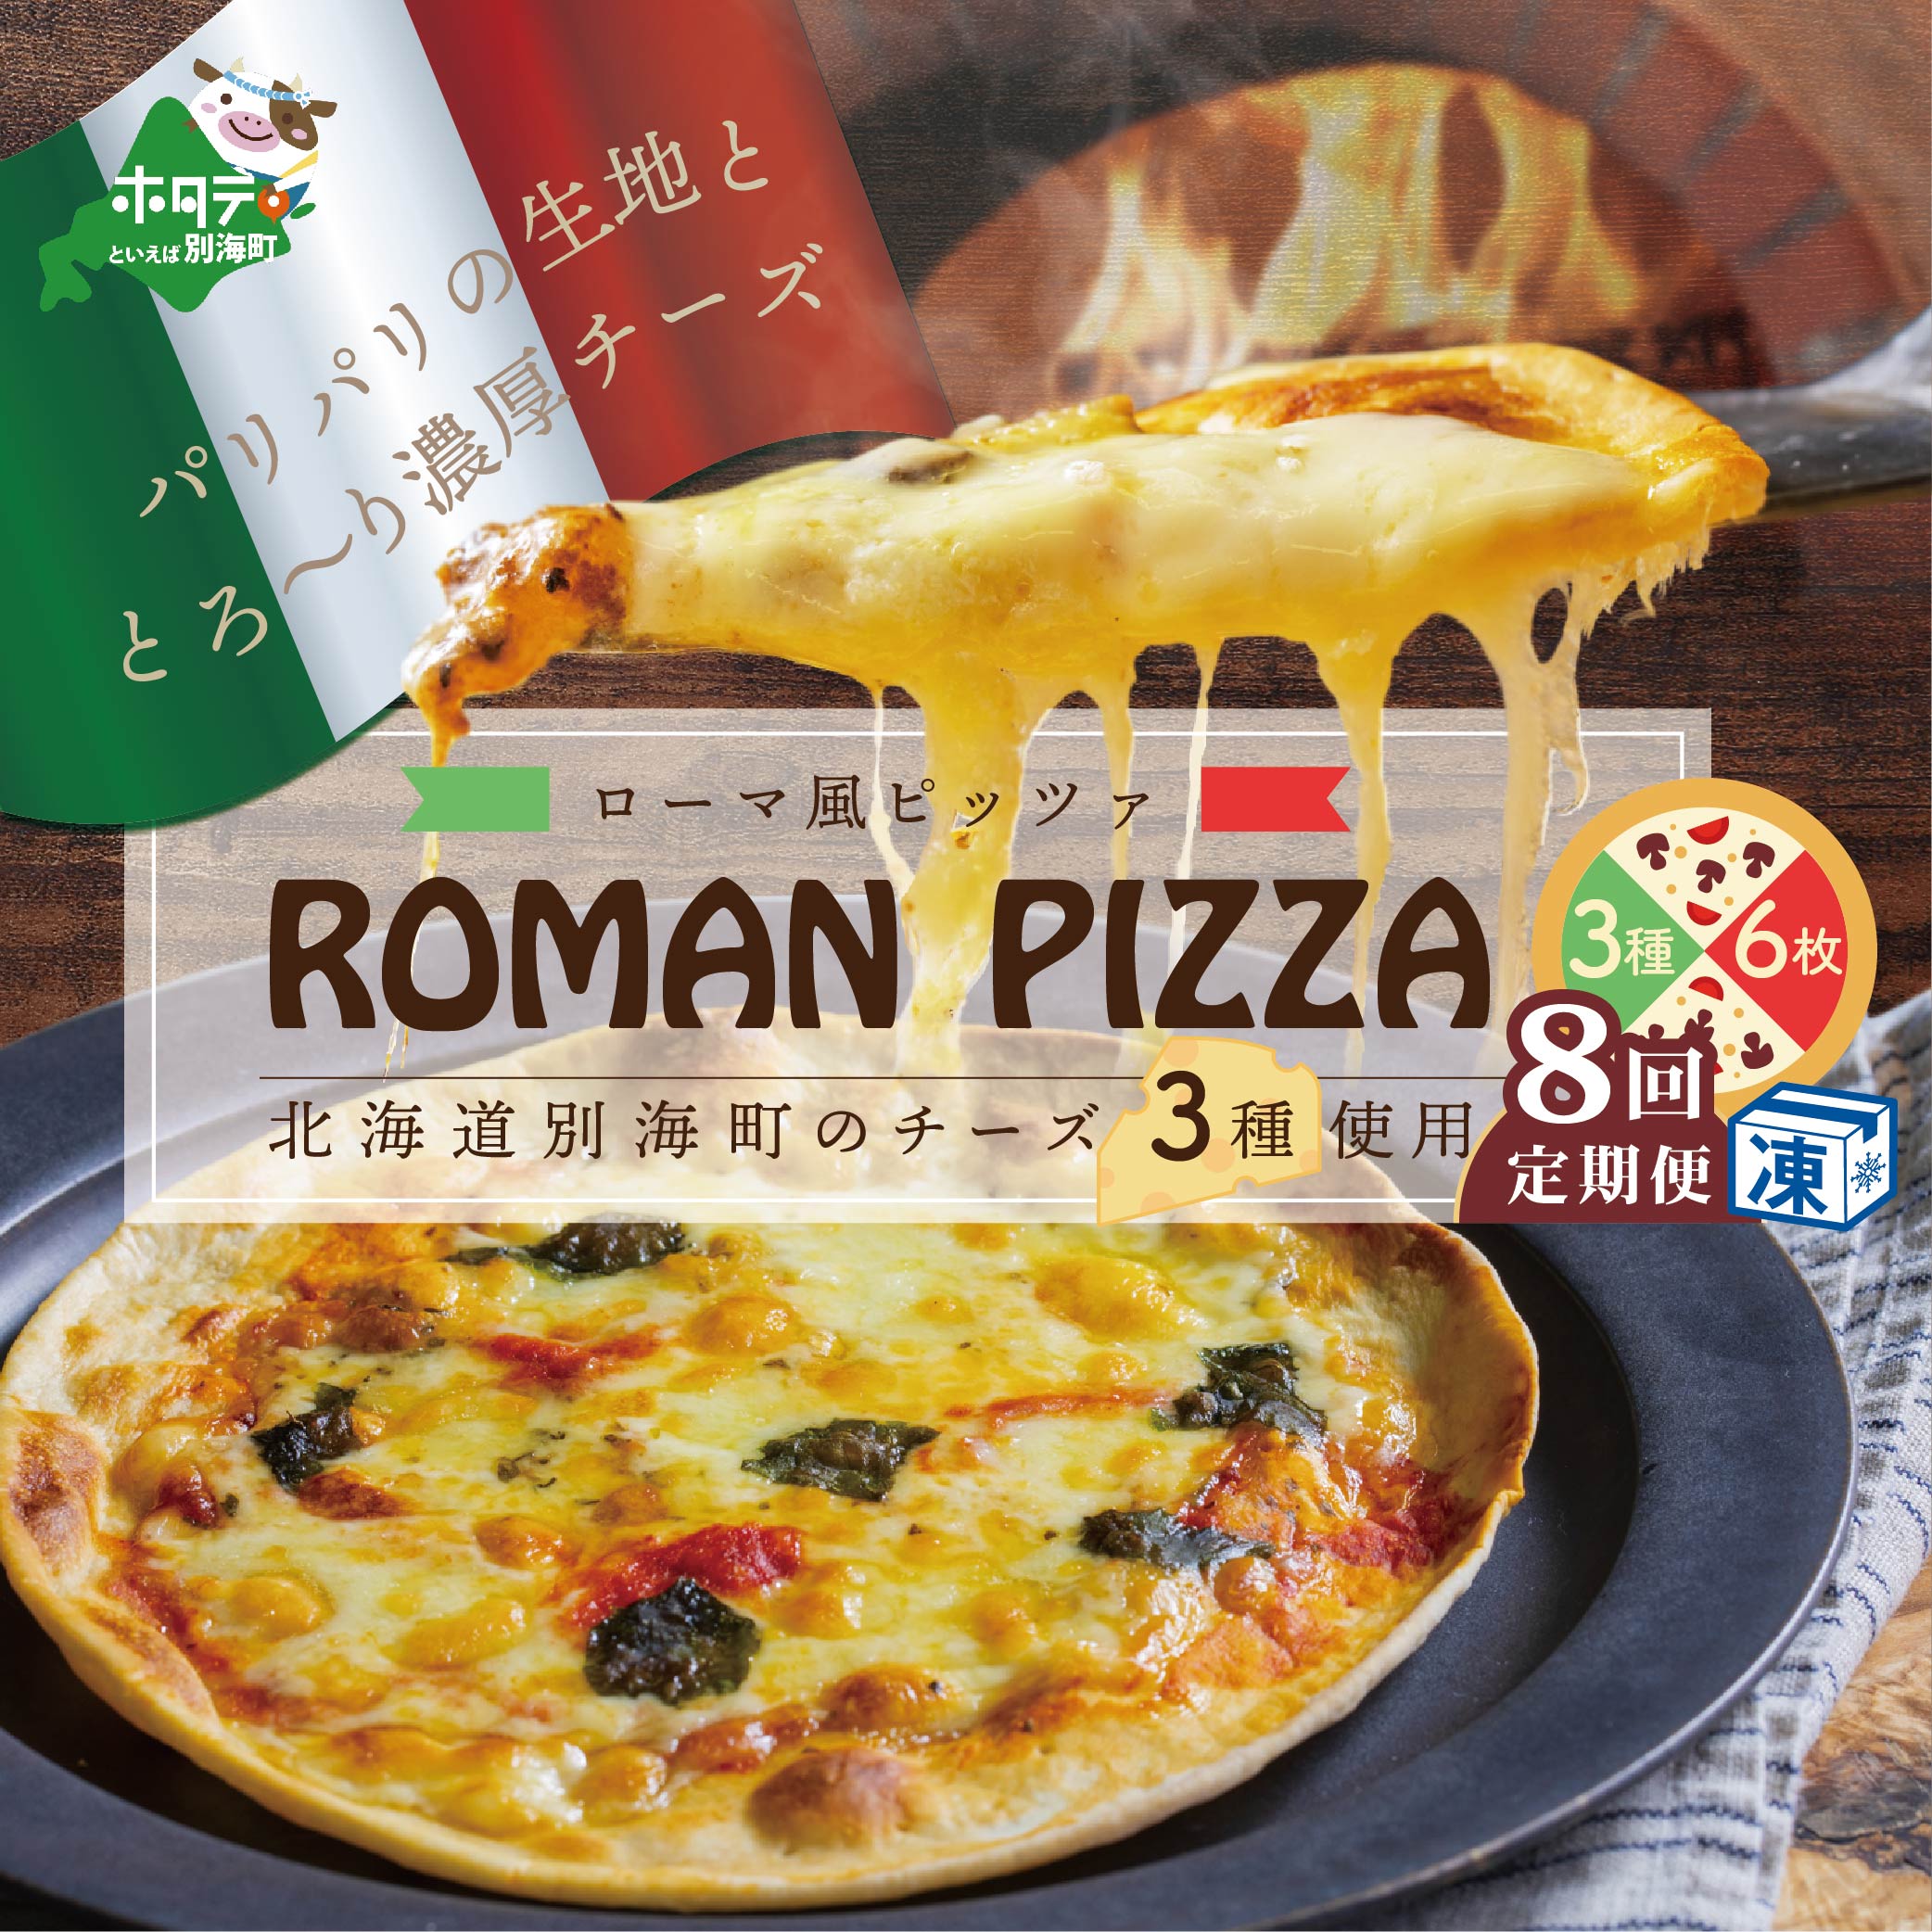 北海道別海町チーズを使ったピザ ６枚セット×８ヵ月(be059-0690-100-8)